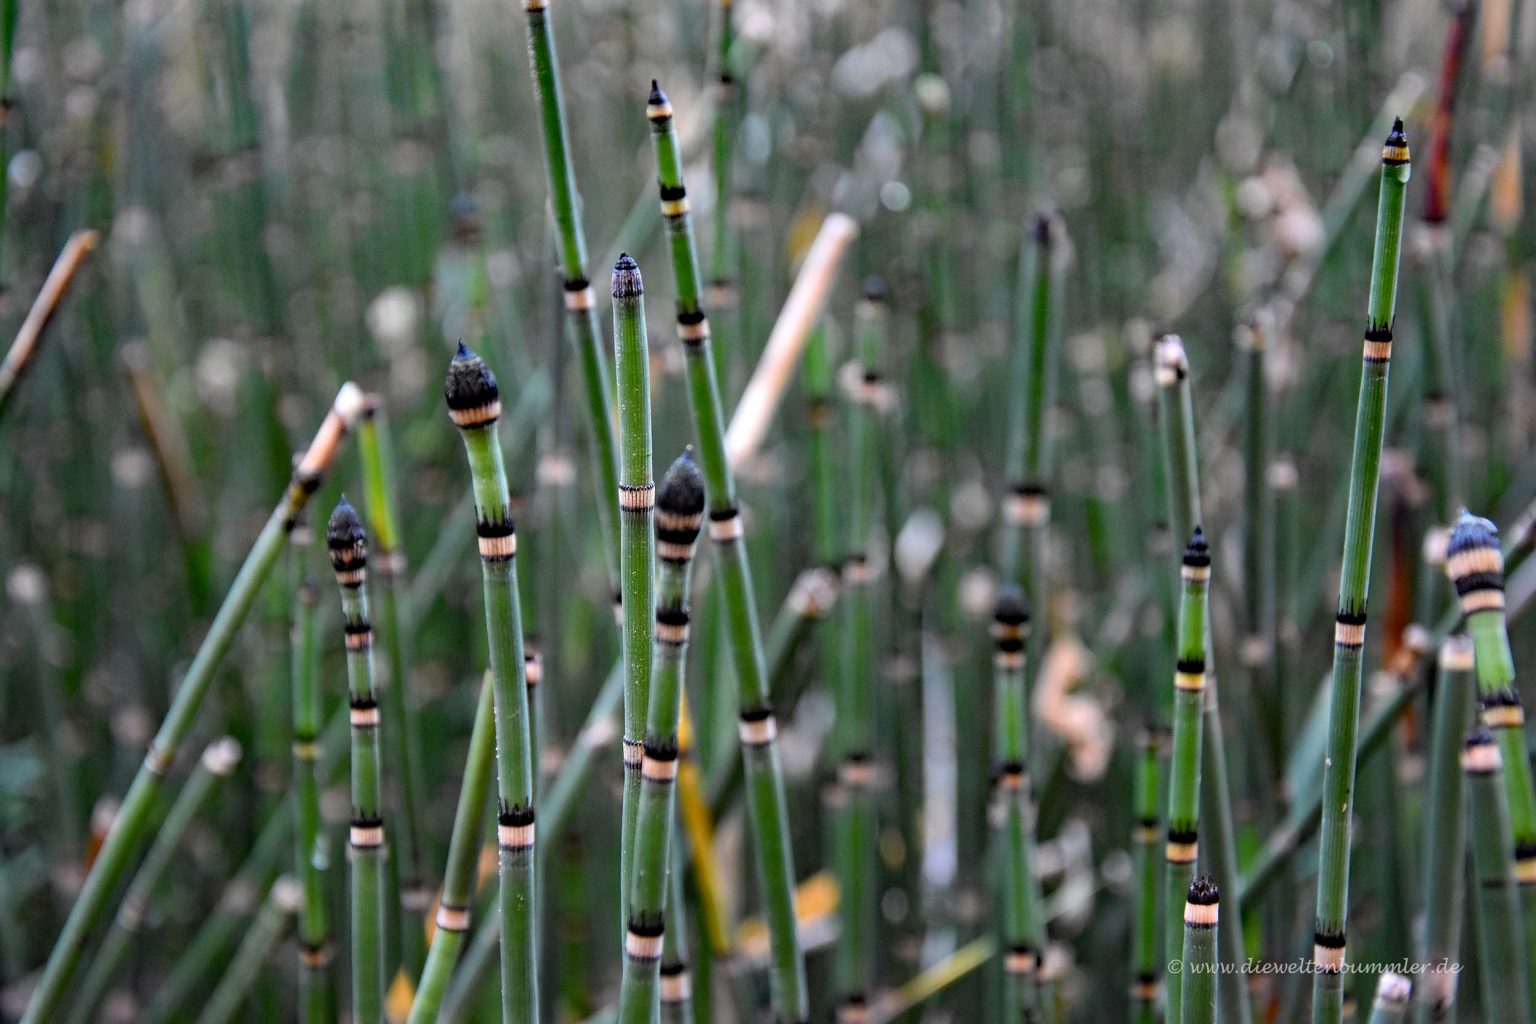 Bambusartige Süßgräser